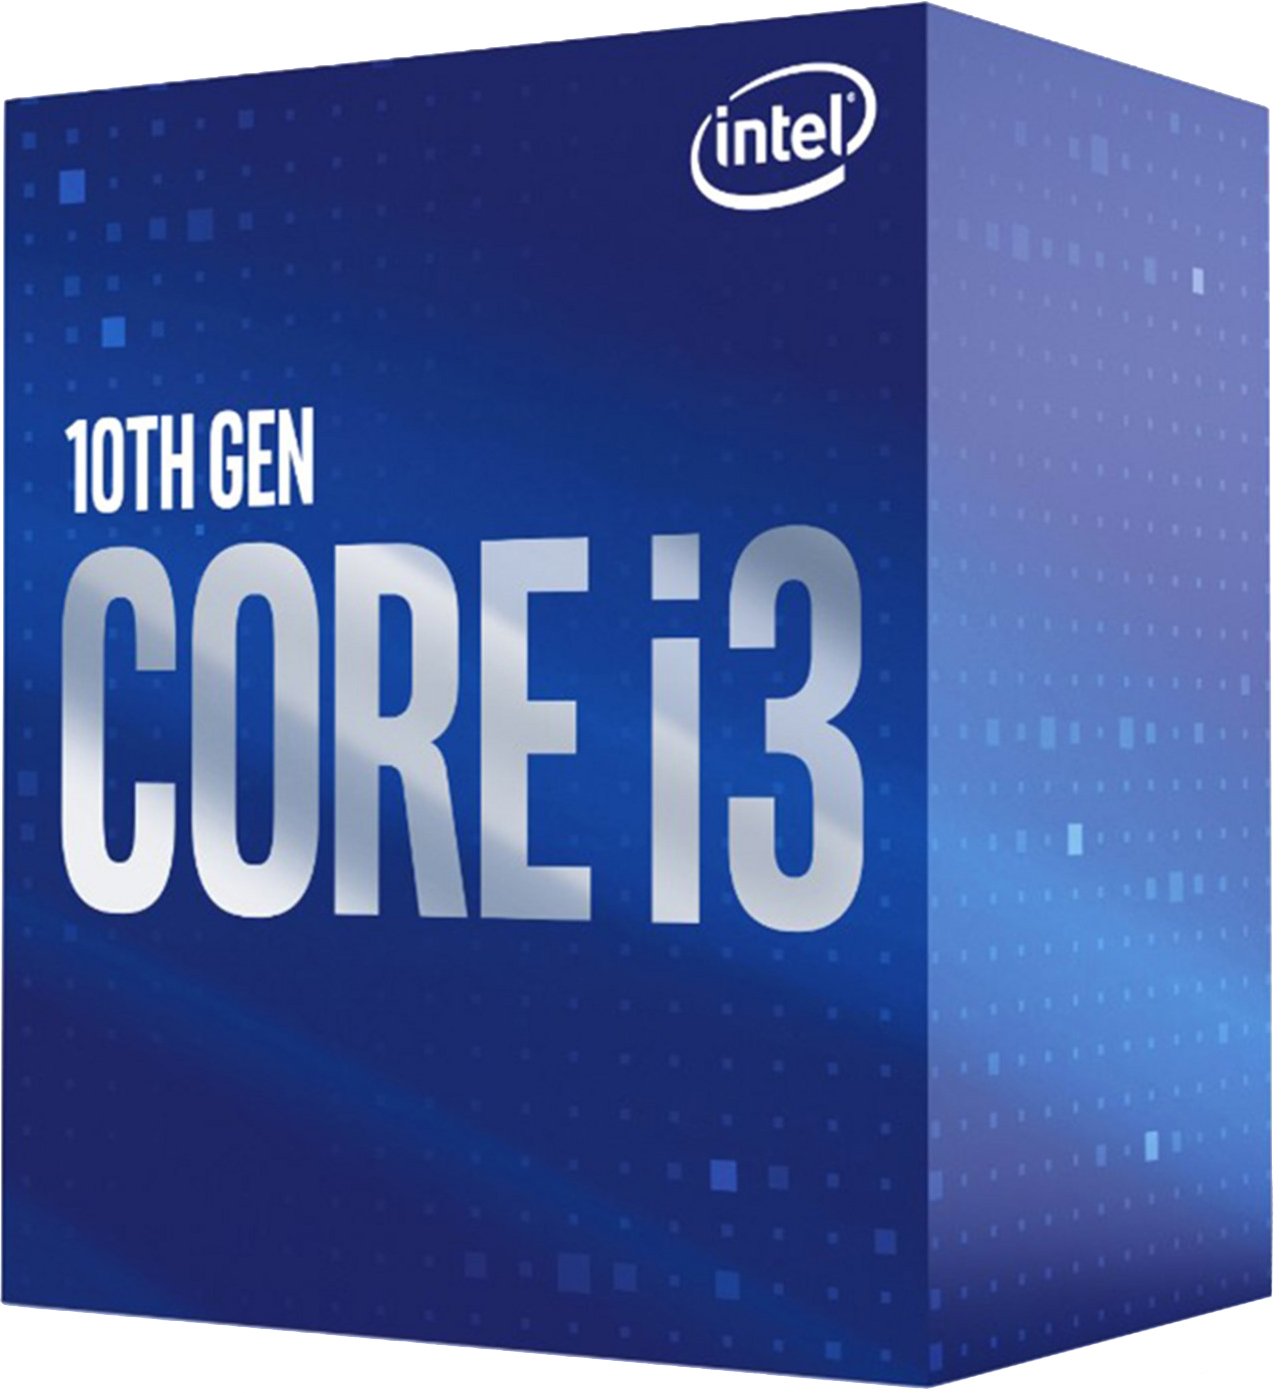 Процессор Intel Core i3-10105 4/8 3.7GHz 6M LGA1200 65W box (BX8070110105) фото 3